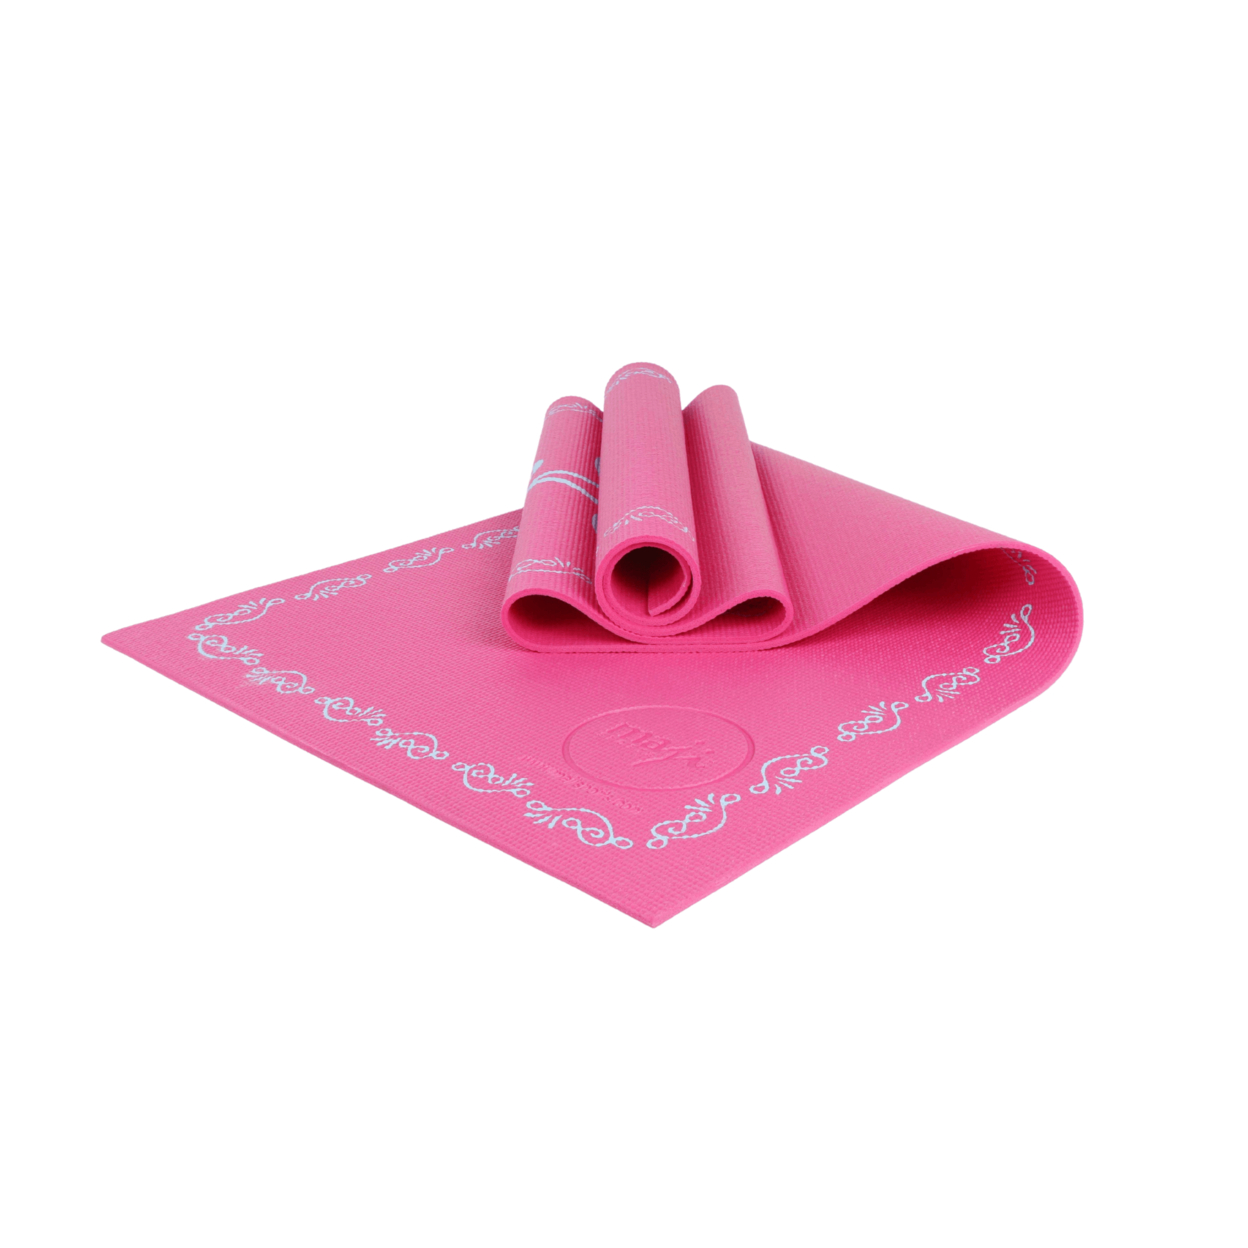 Printed PVC Yoga Mat - Pink